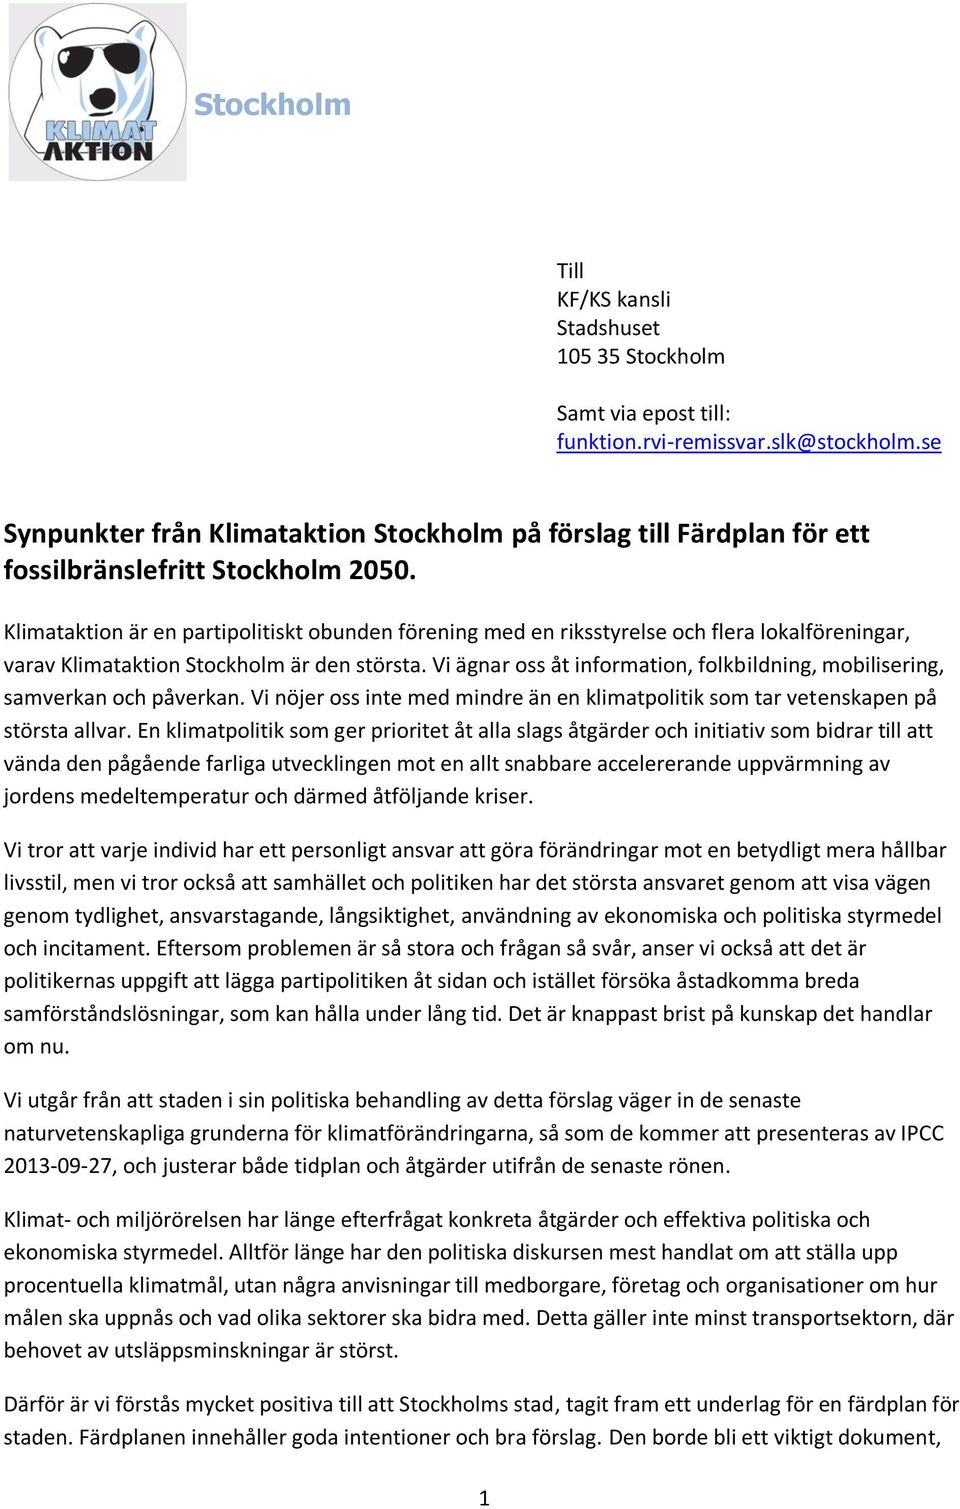 Klimataktion är en partipolitiskt obunden förening med en riksstyrelse och flera lokalföreningar, varav Klimataktion Stockholm är den största.